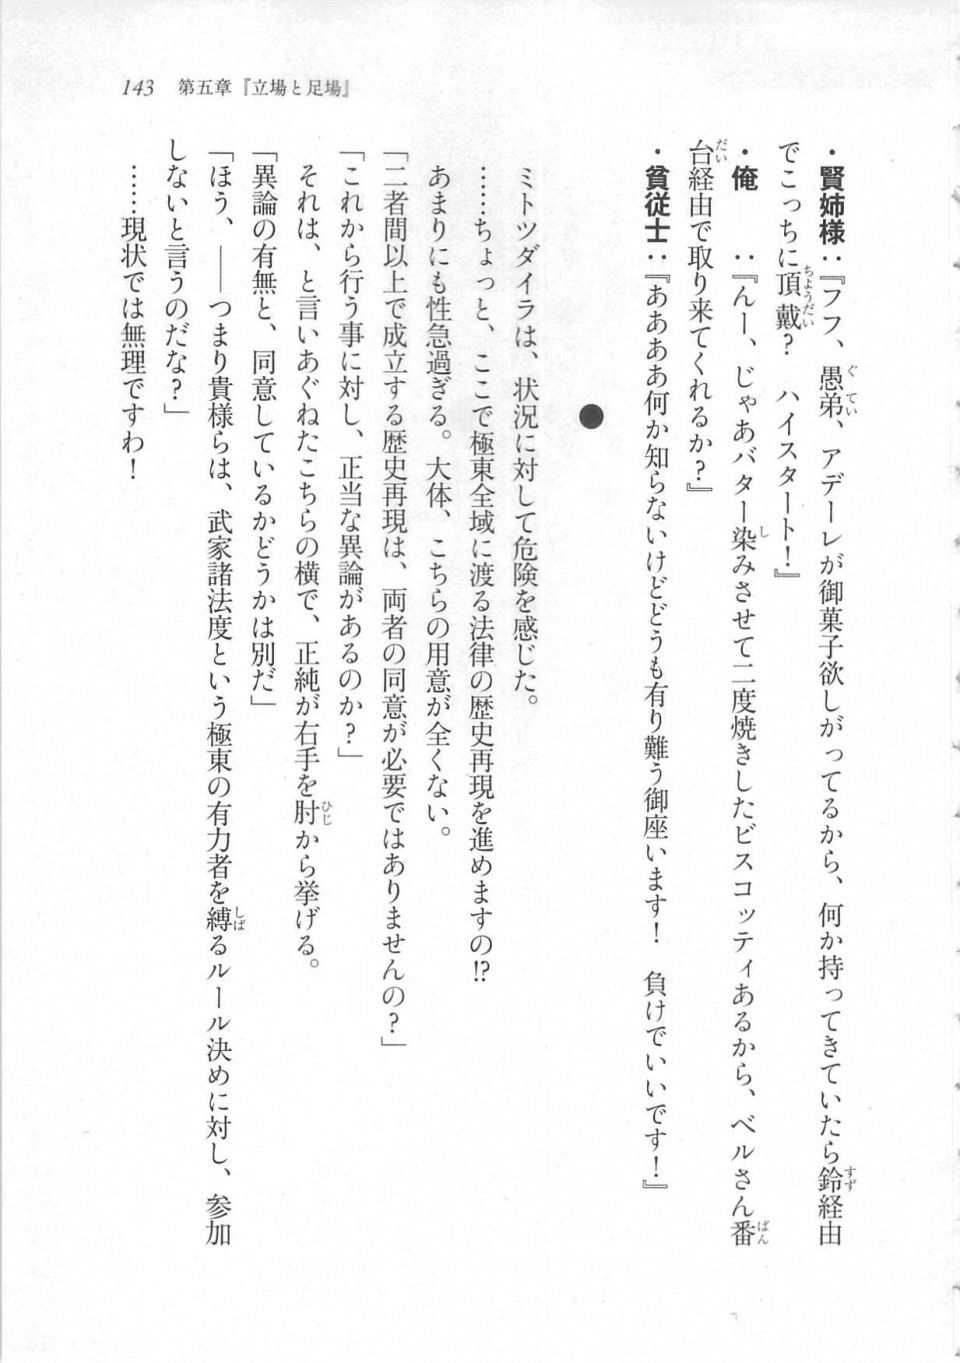 Kyoukai Senjou no Horizon LN Sidestory Vol 3 - Photo #147